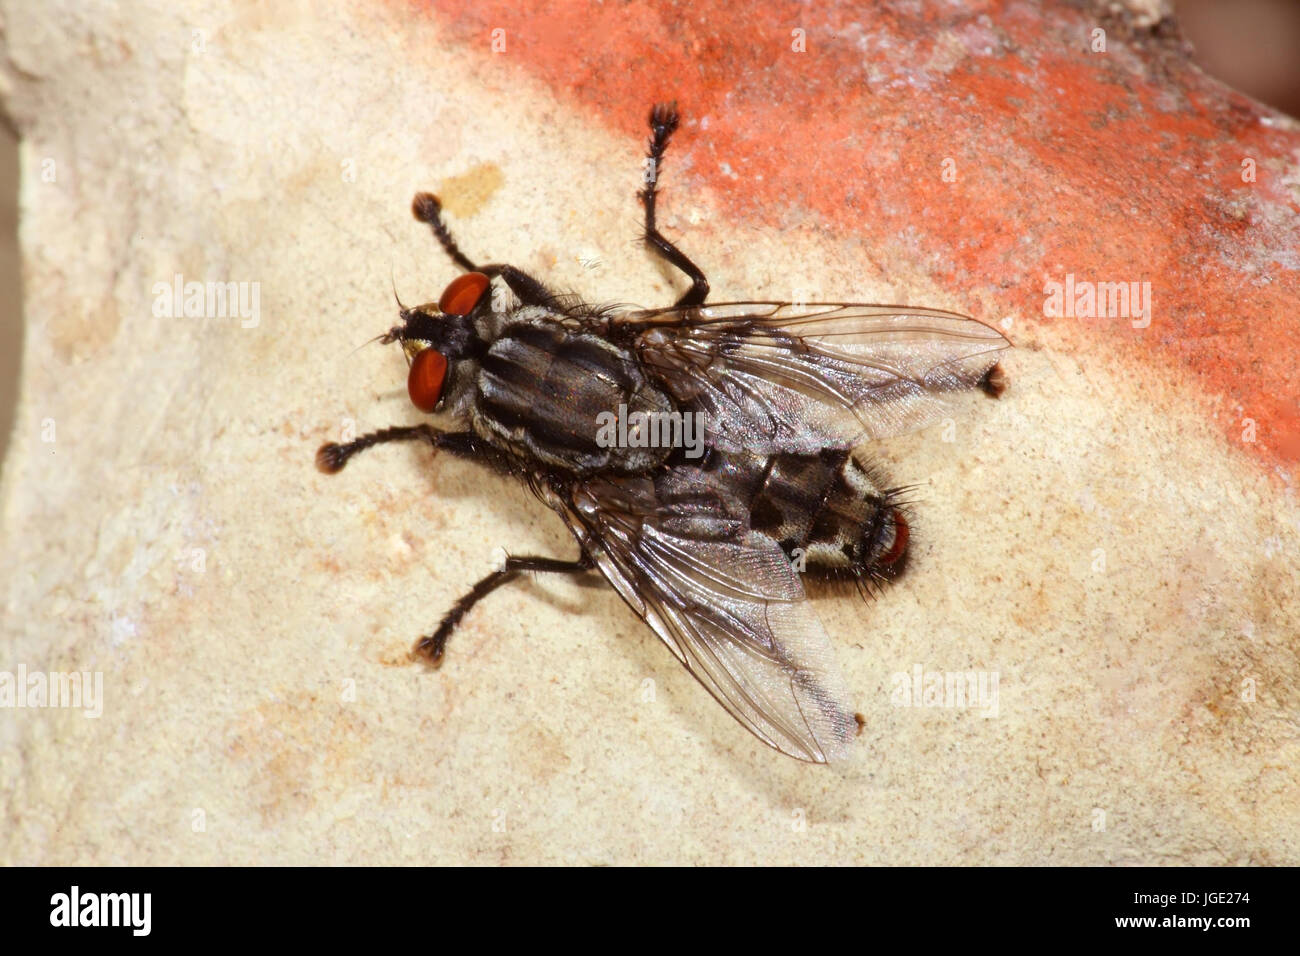 Grey meat fly , Graue Fleischfliege Stock Photo